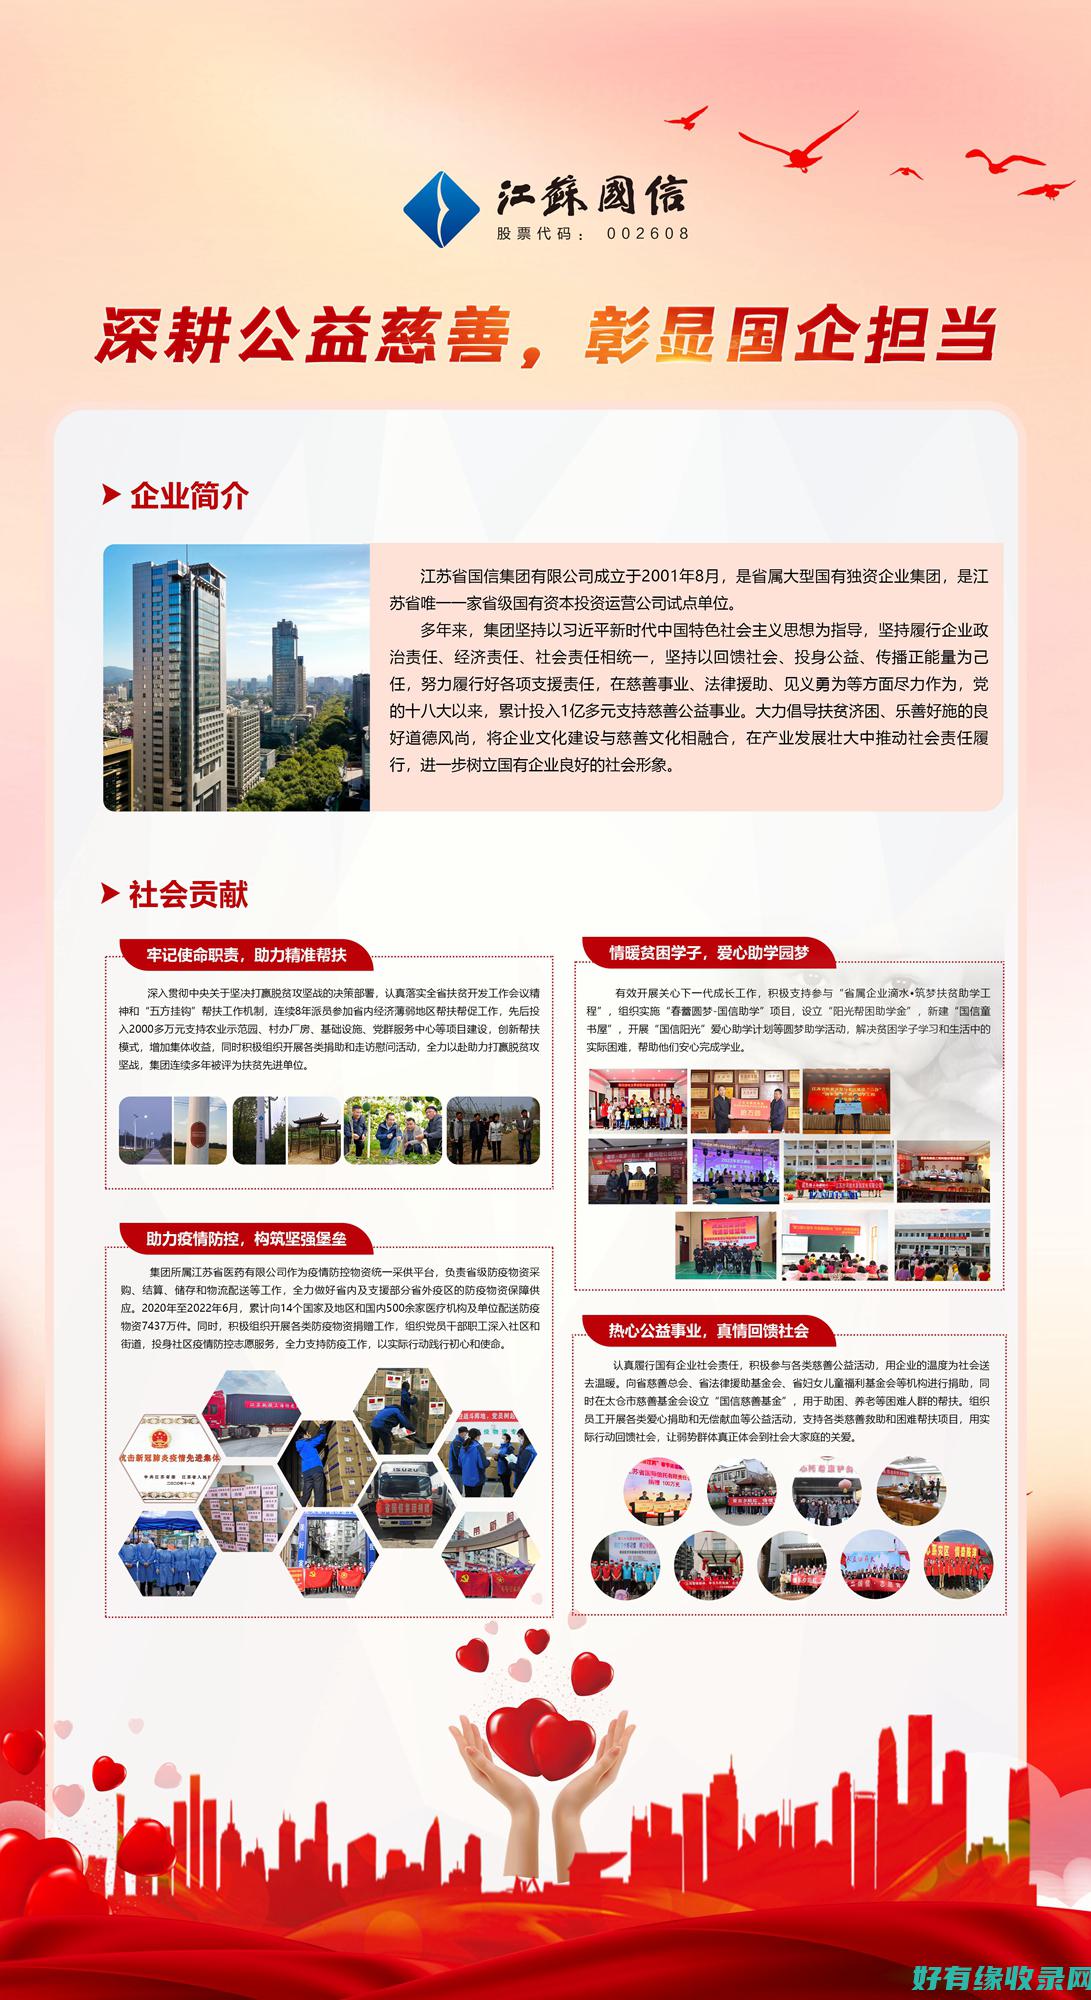 中国工信部网站：推动智能制造，引领产业升级 (中国工信部网站备案查询网址)